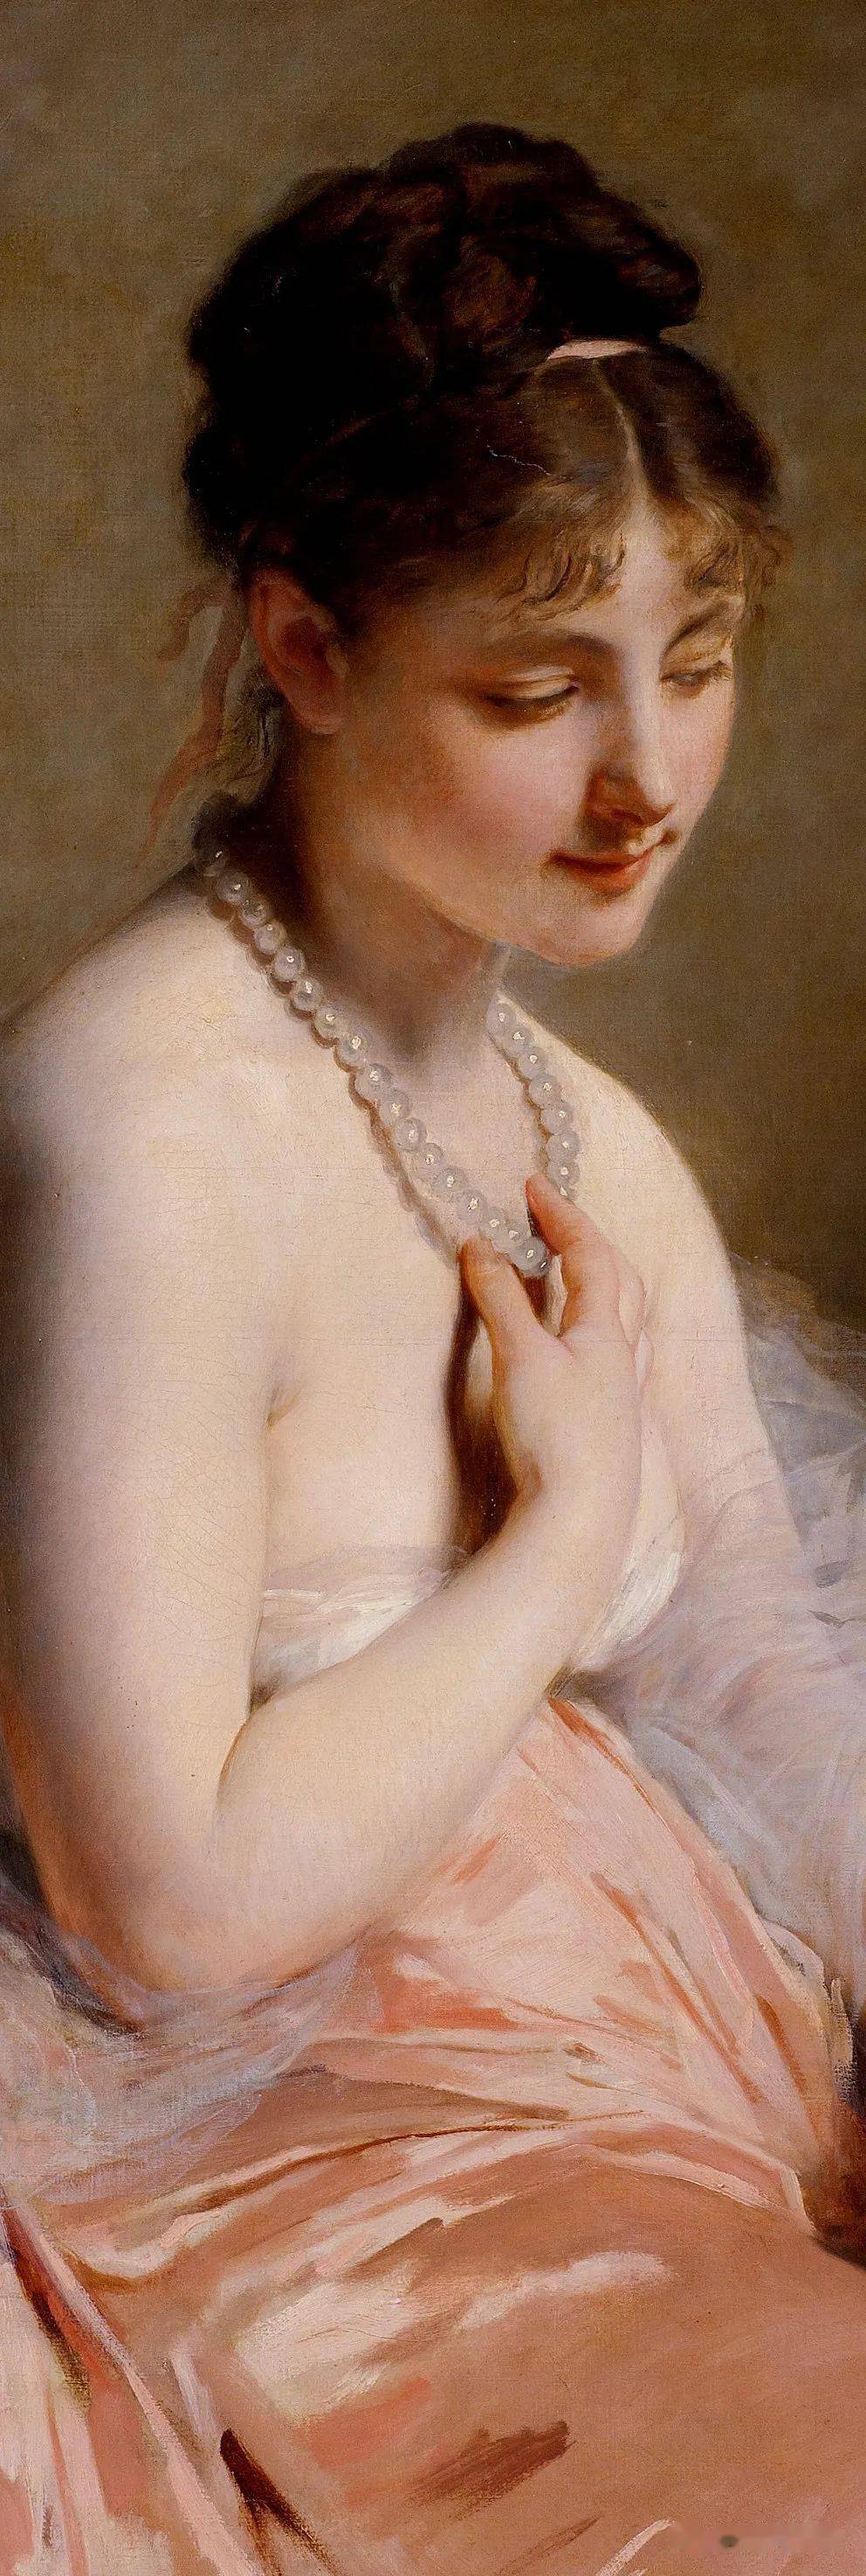 法国油画家查尔斯乔舒亚卓别林油画中的法国少女清纯唯美肤如凝脂